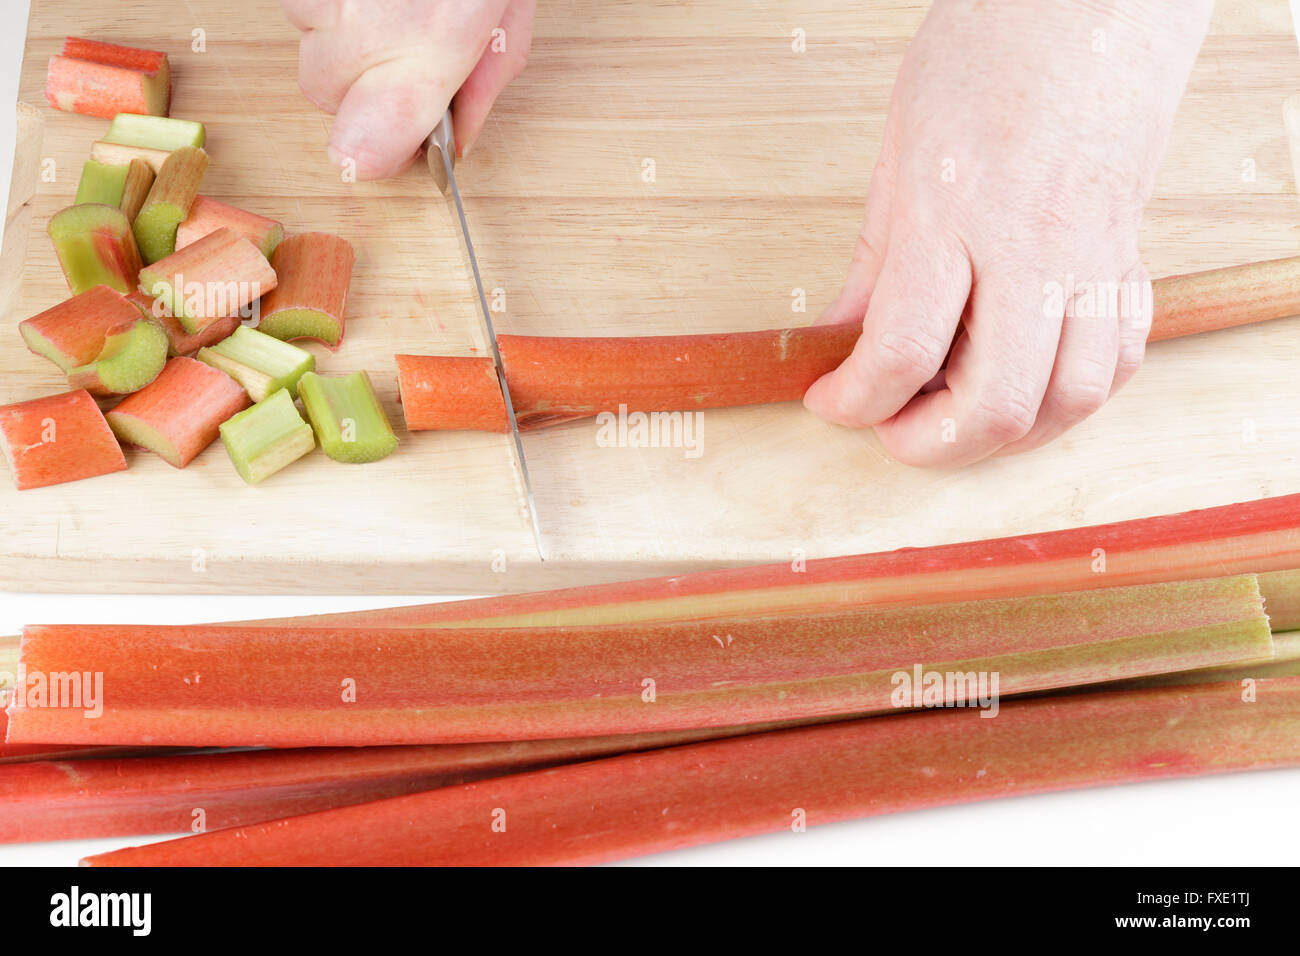 Hände schneiden Rhabarber in der Küche Stockfoto